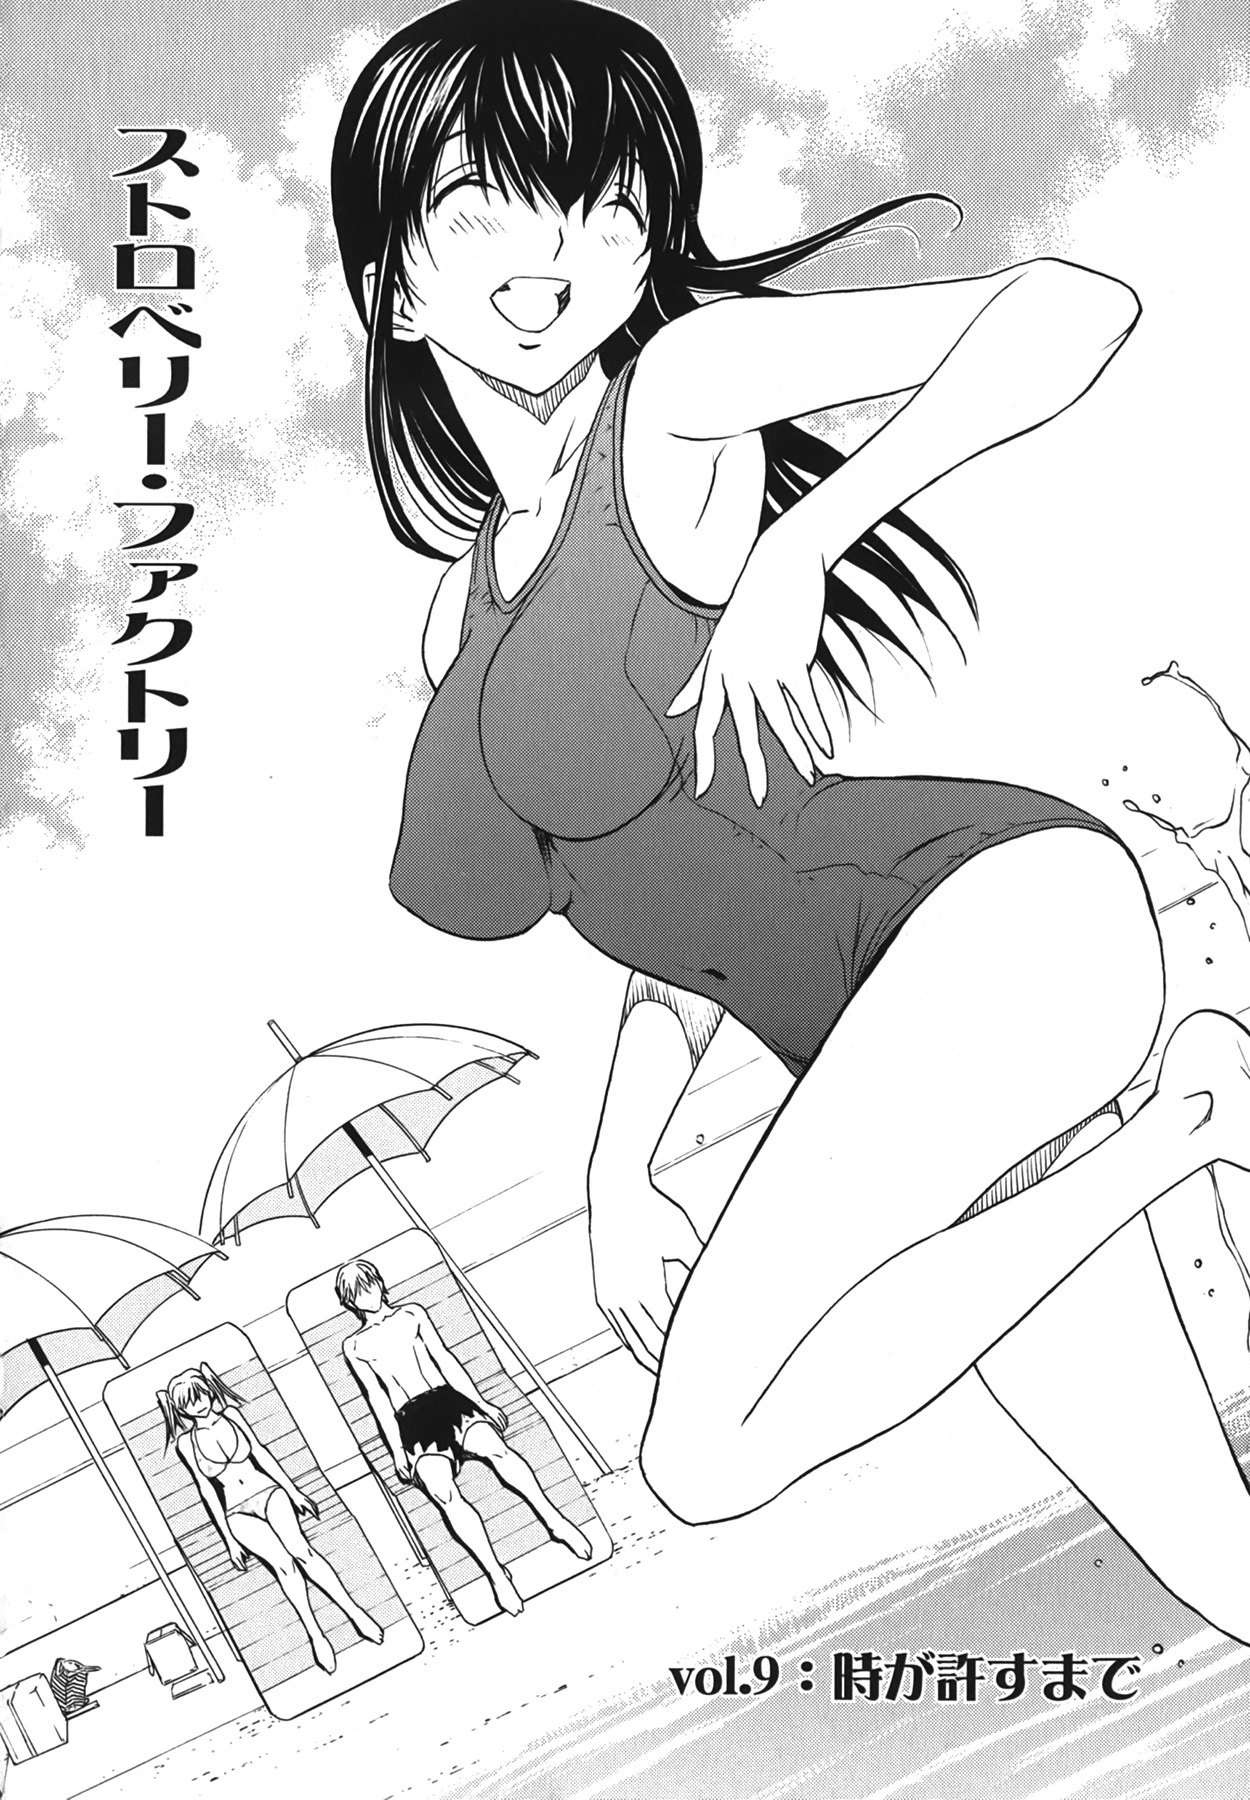 (成年コミック) [OKAWARI] ストロベリー☆ファクトリー + 初回限定版CD(mp3) [2009-12-10]